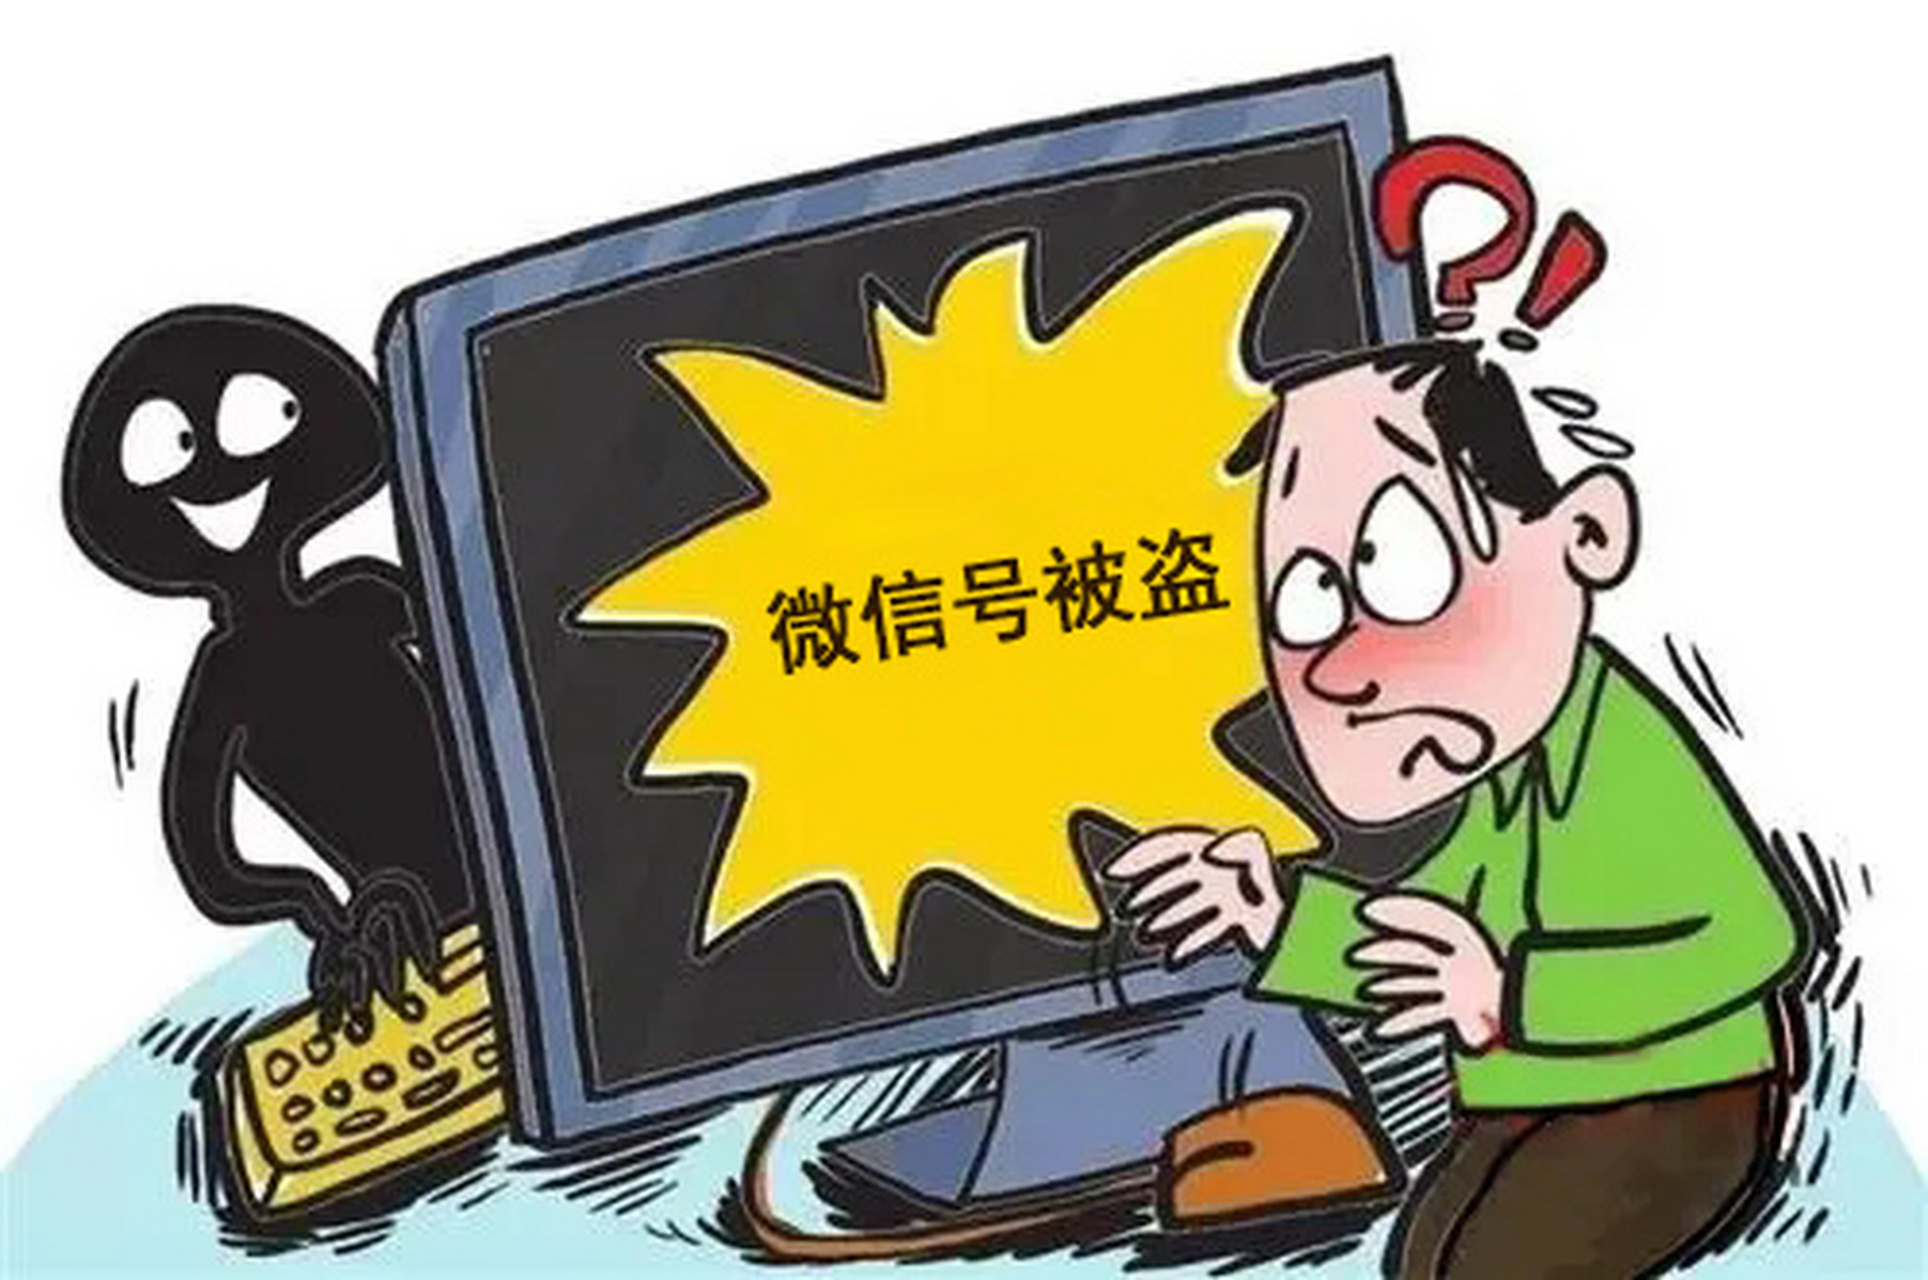 上海反诈中心提示:财务人员微信被盗,后果很严重